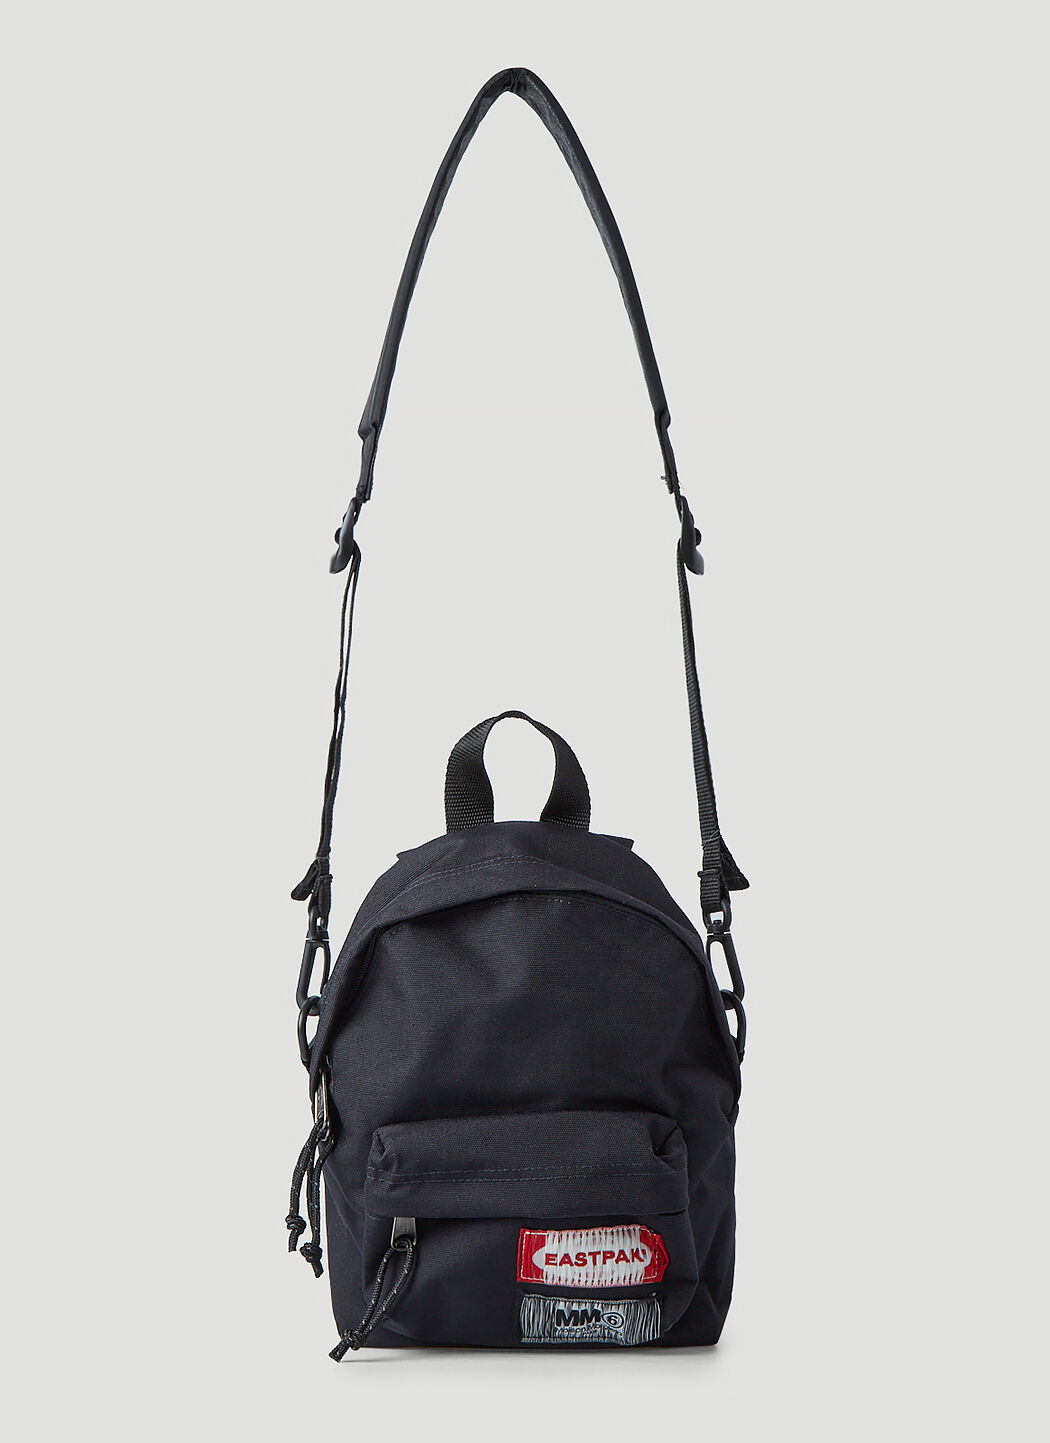 MM6 x Eastpak x Eastpak Mini Backpack in Black | LN-CC